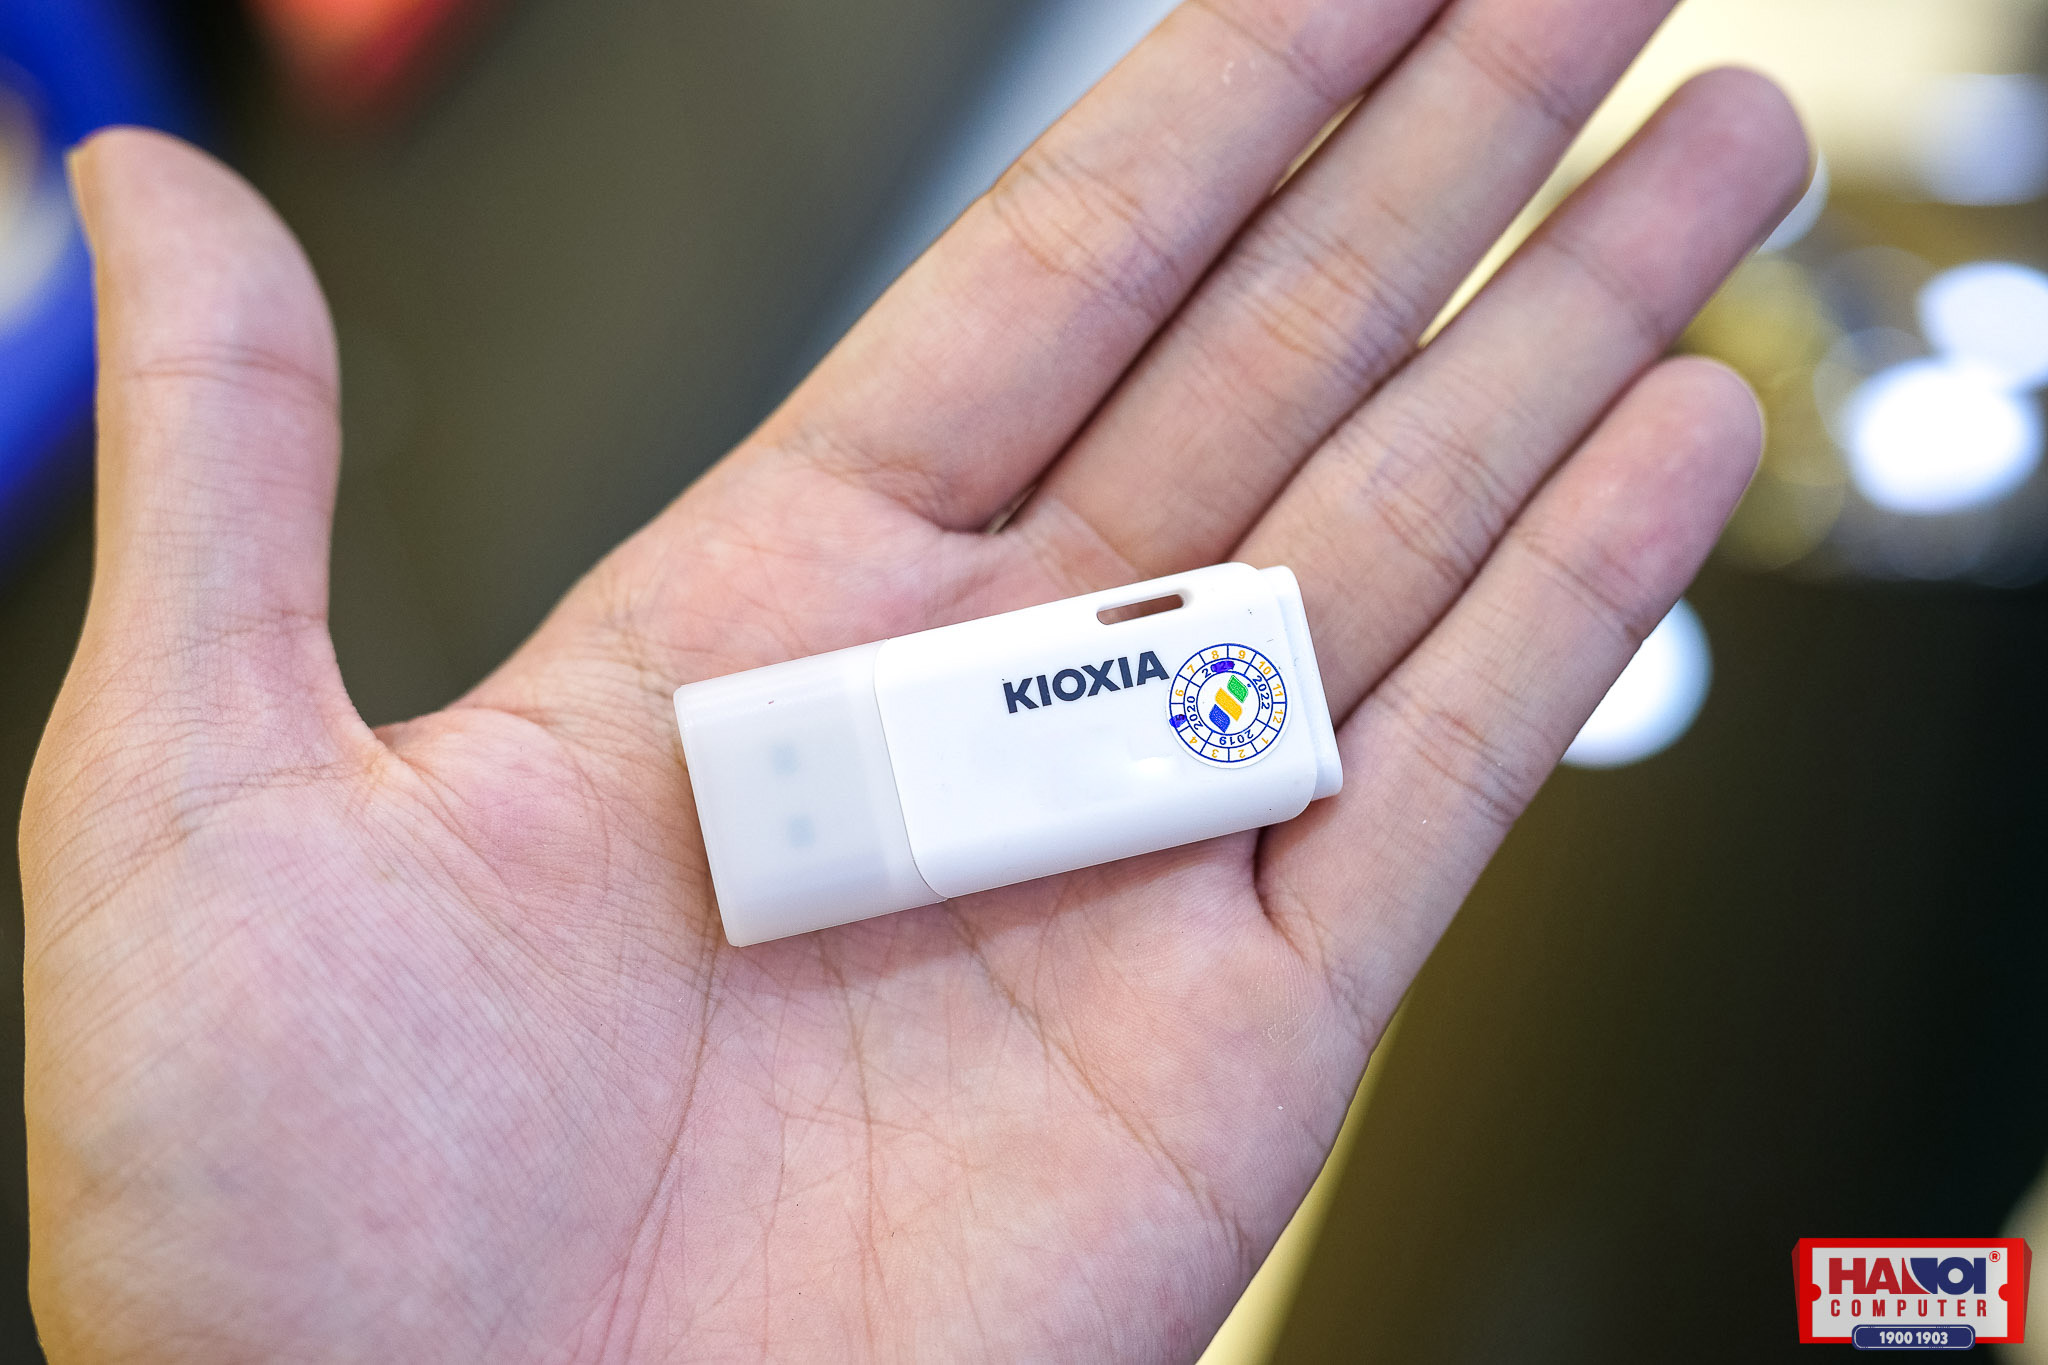 USB Kioxia 16GB 2.0 U202 White LU202W016GG4